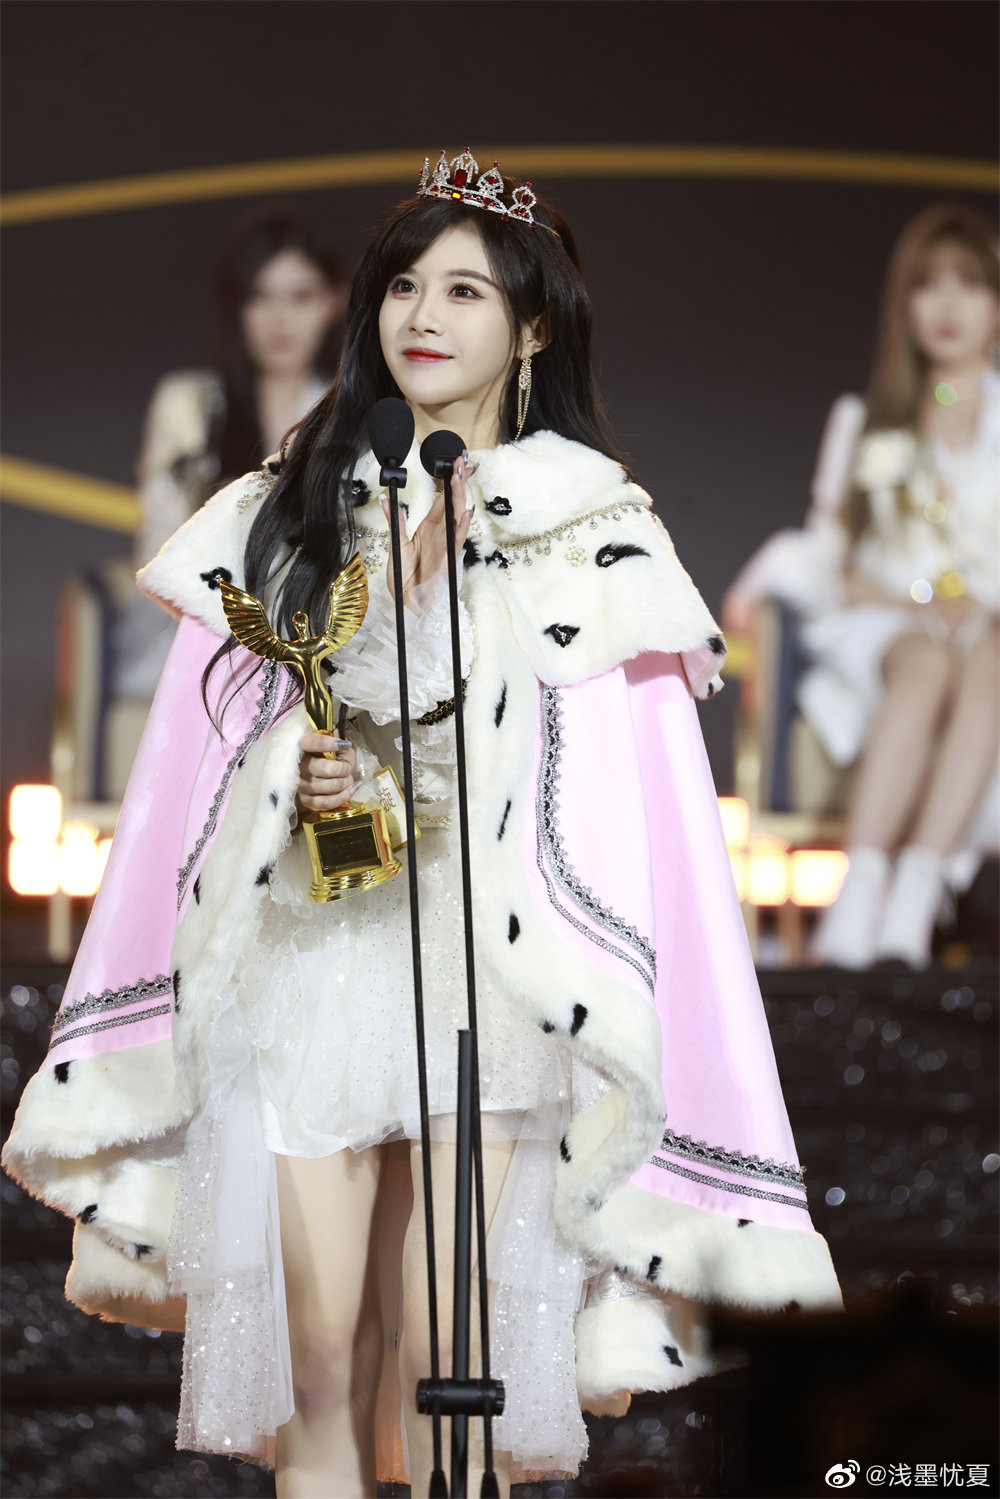 段藝璇在SNH48第九屆總選舉中獲得亞軍。